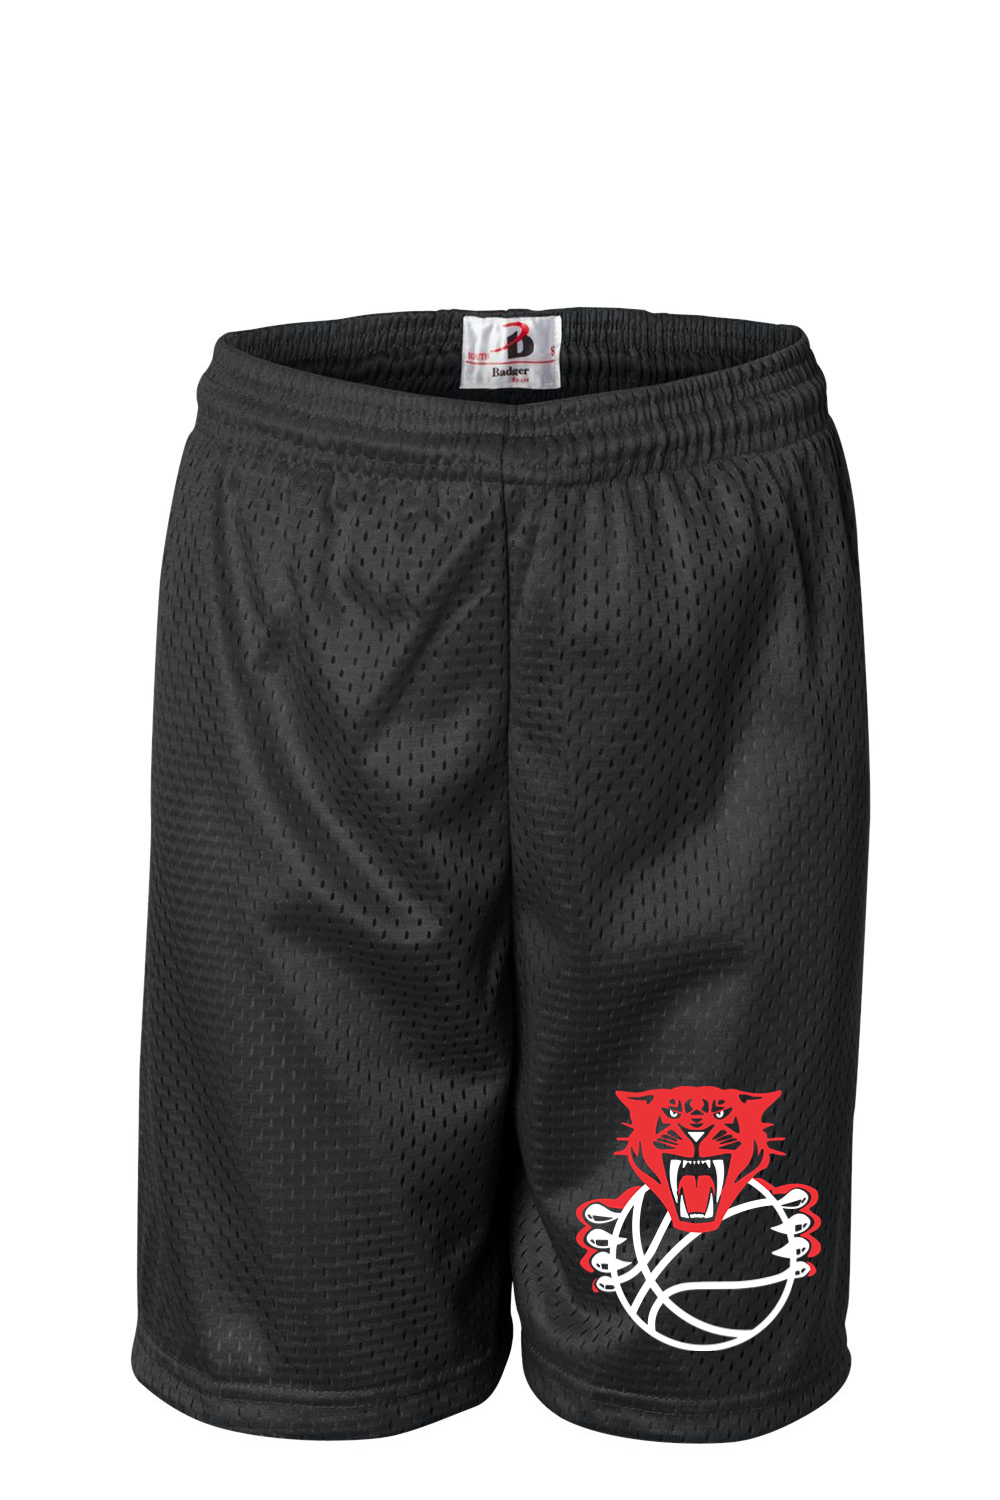 Sabers Basketball Badger Youth Pro Mesh 6" Shorts